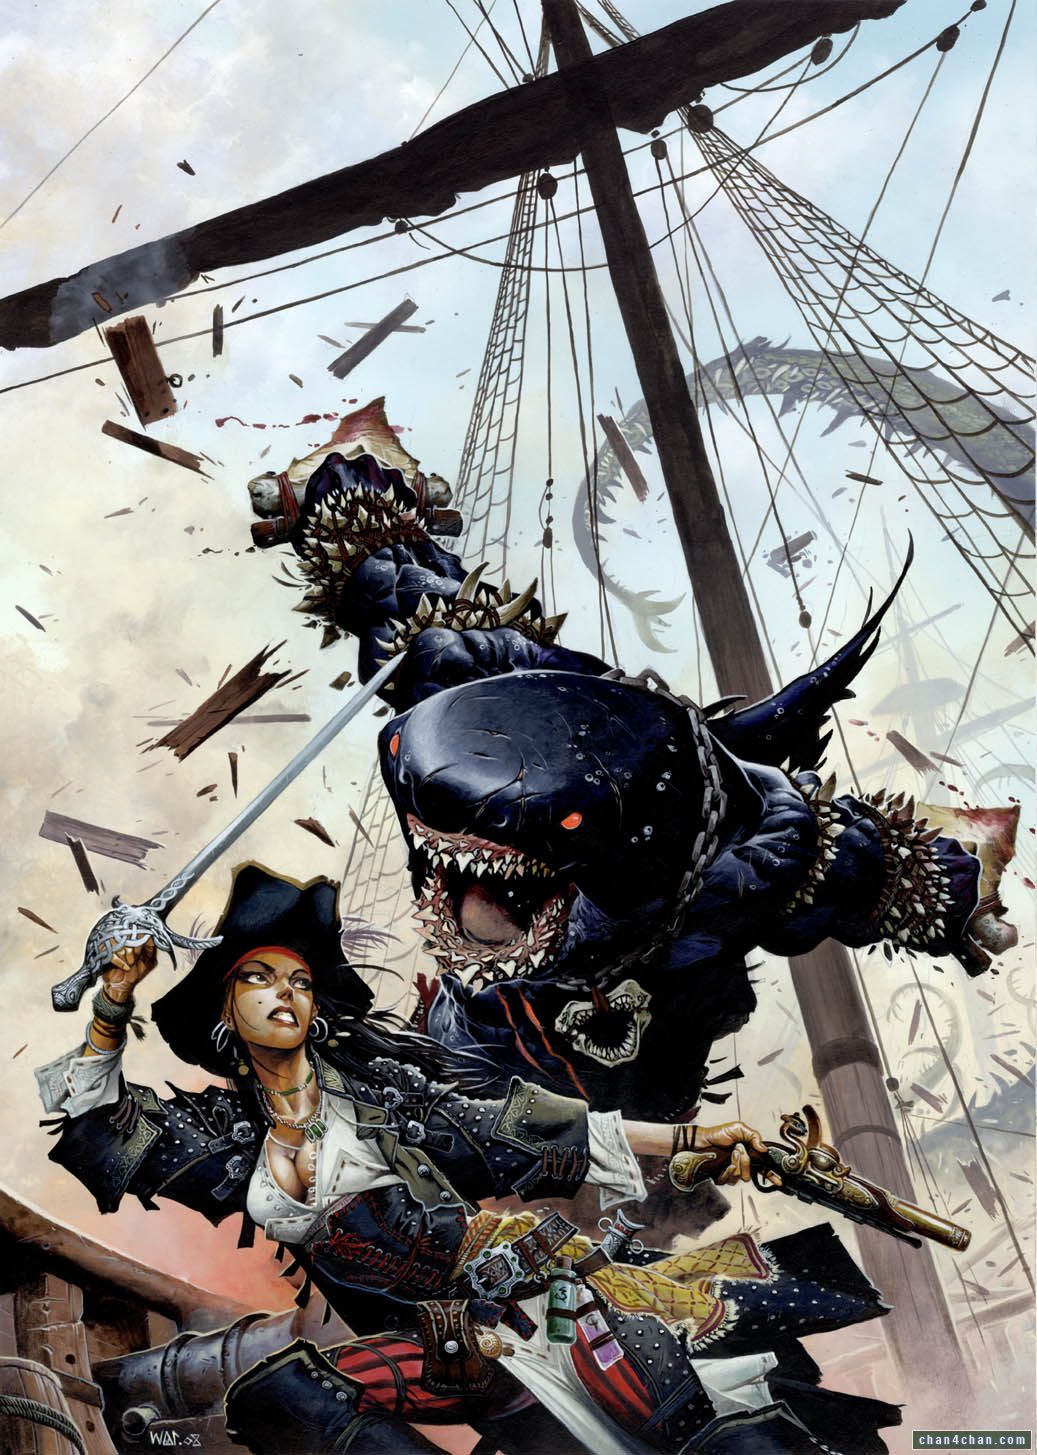 Cool Pirate Artwork